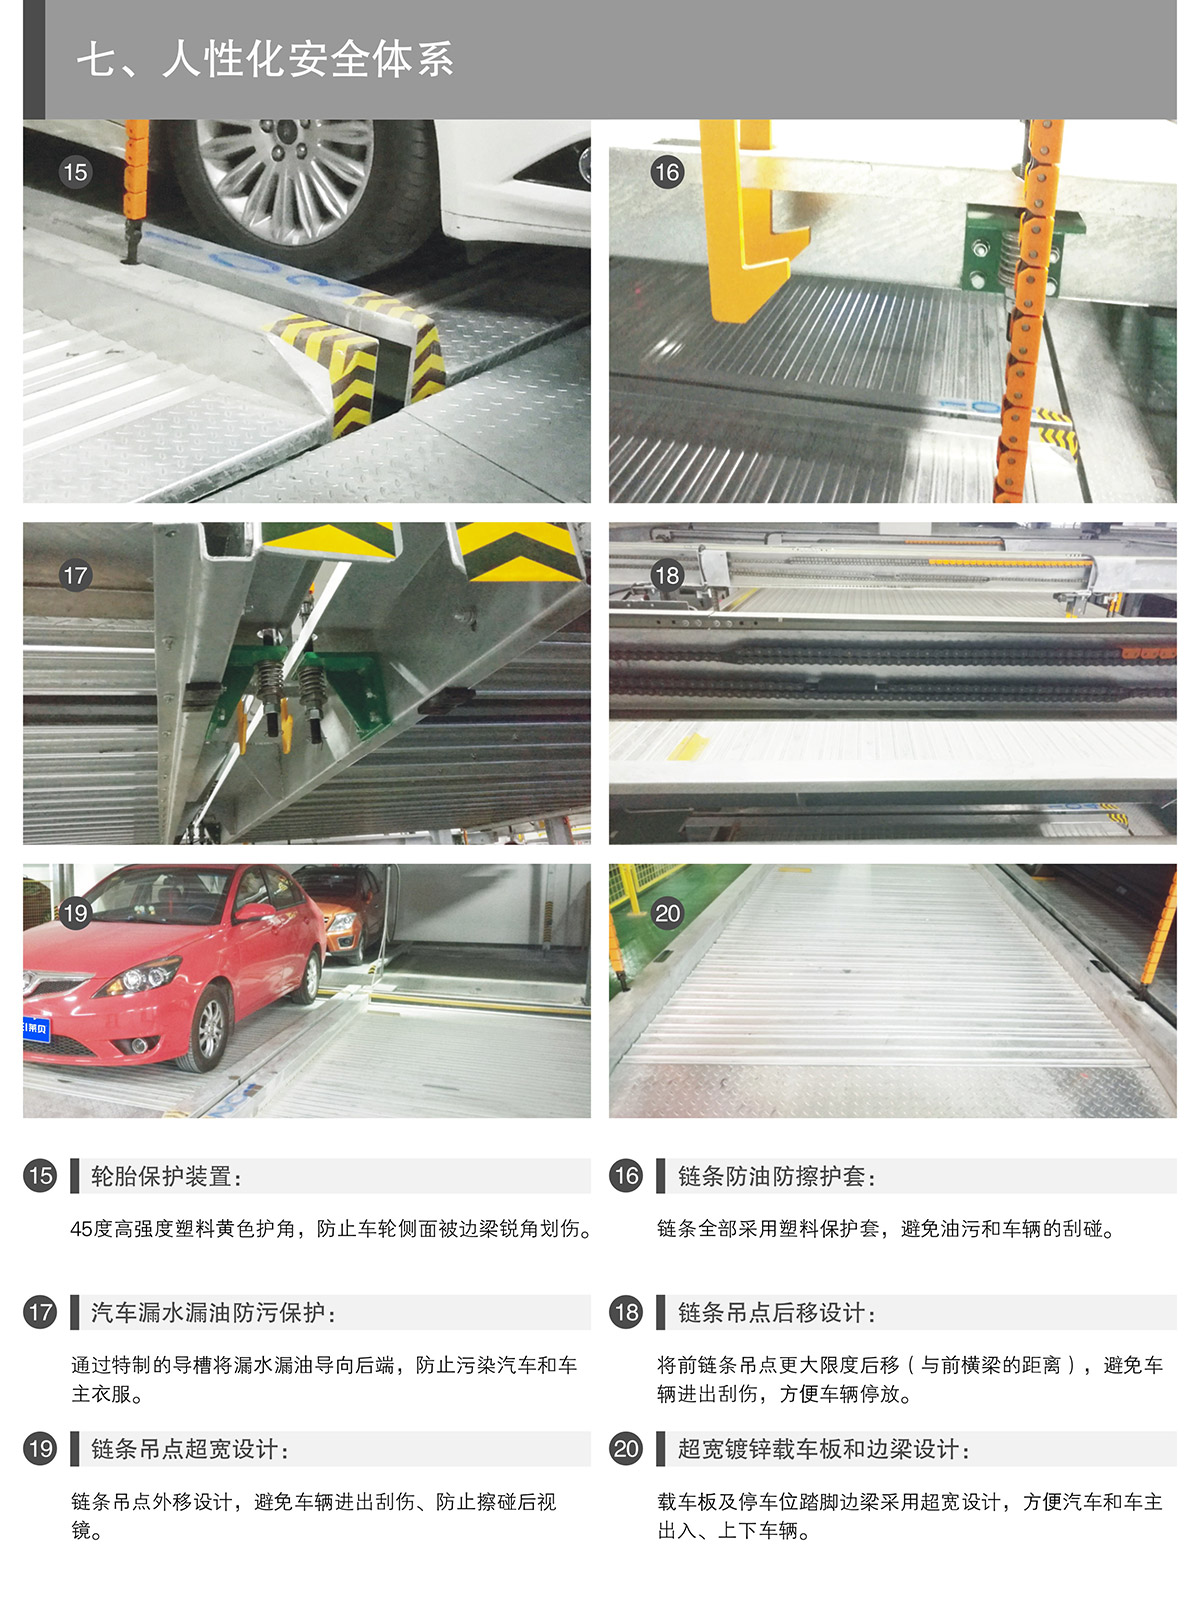 贵州PSH2-D1负一正一地坑二层升降横移类机械式立体停车设备人性化安全体系.jpg